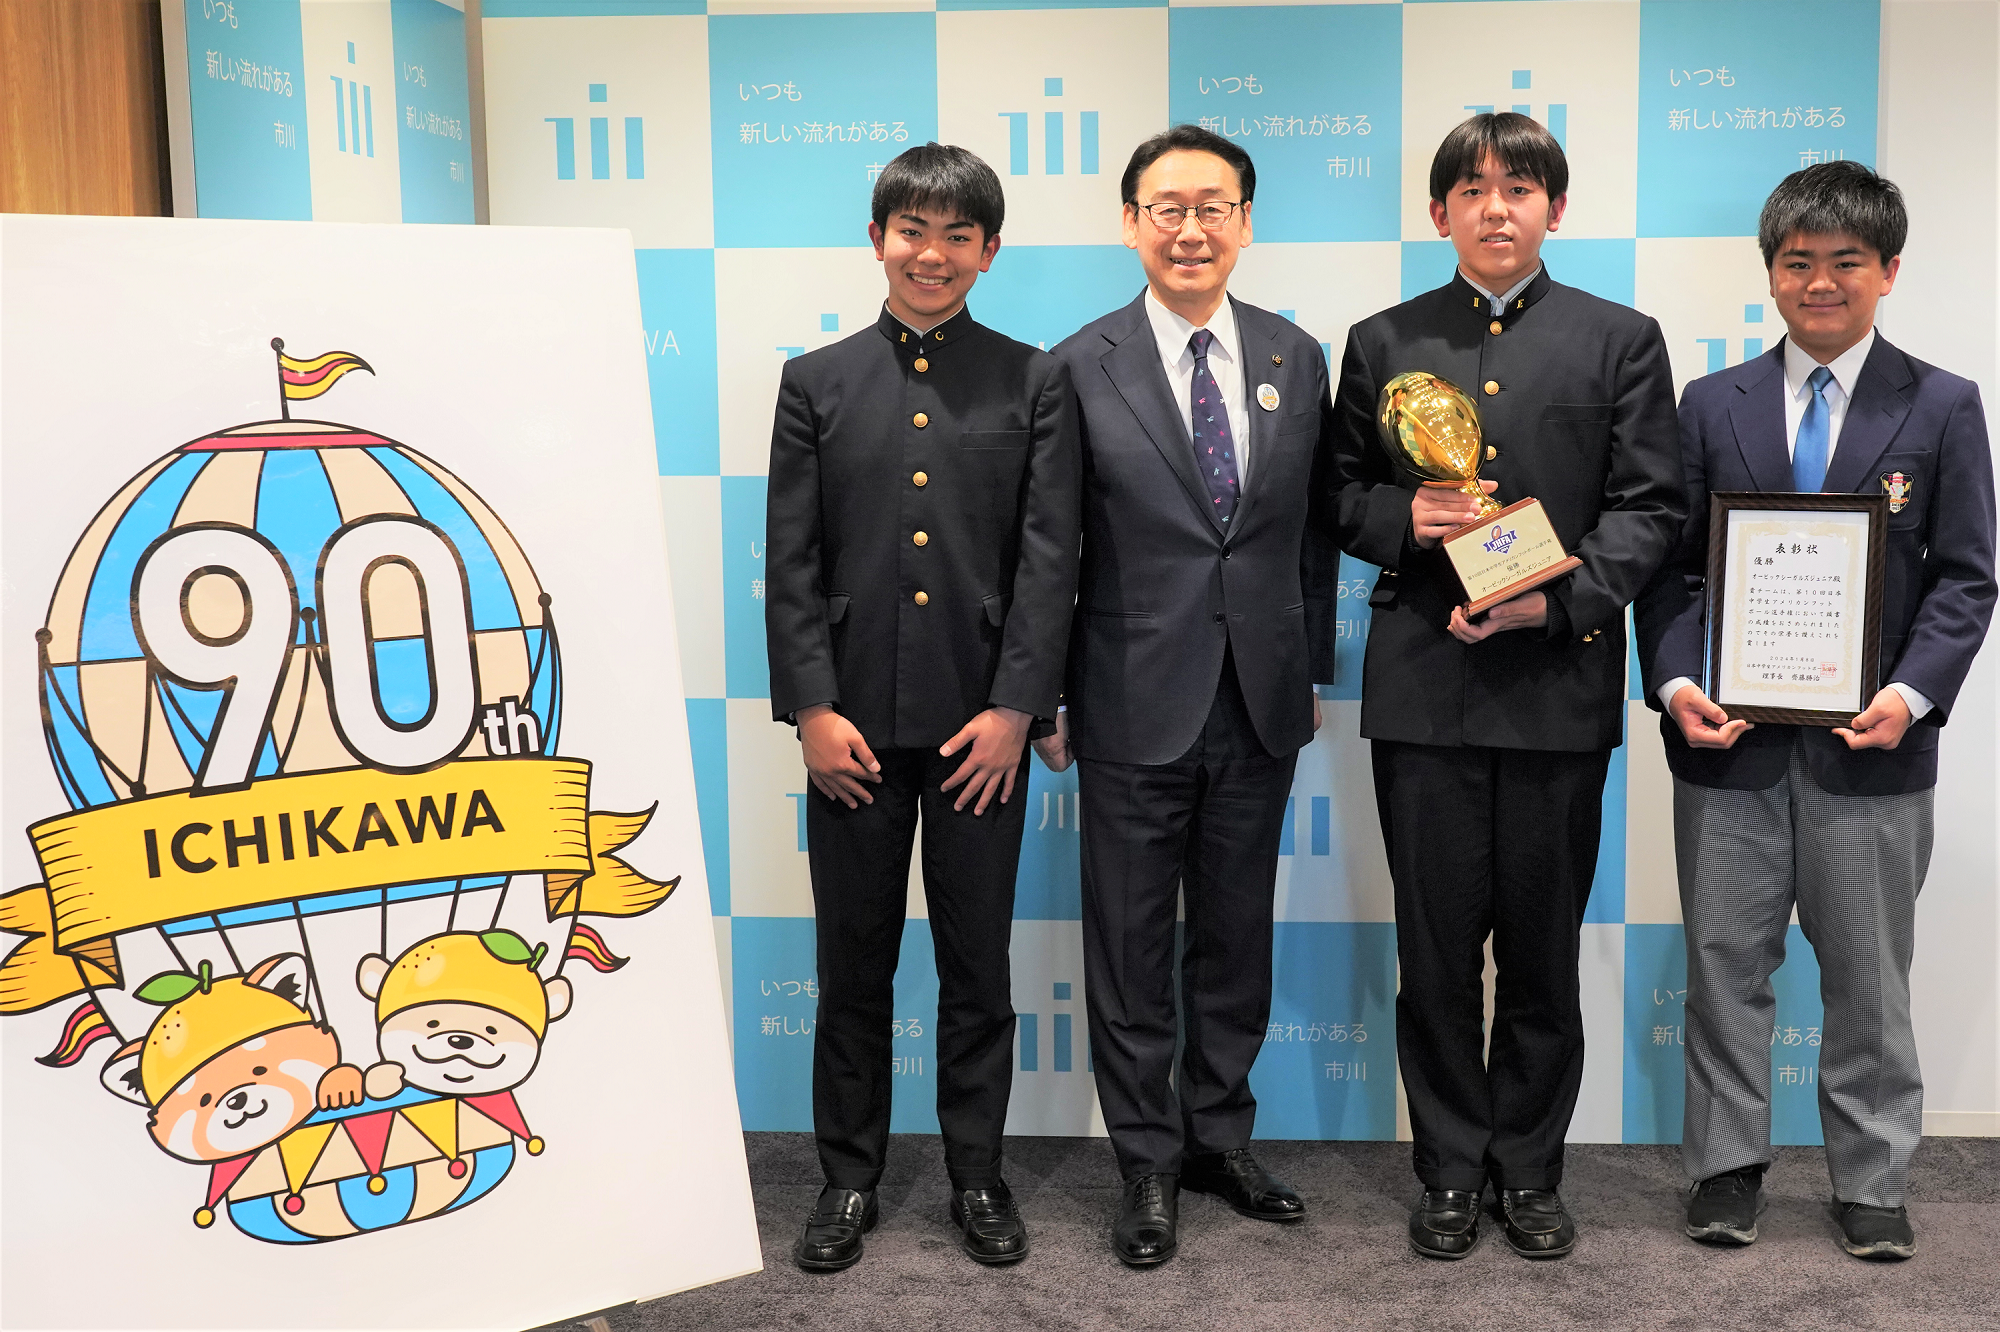 田中市長とアメリカンフットボール選手との集合写真